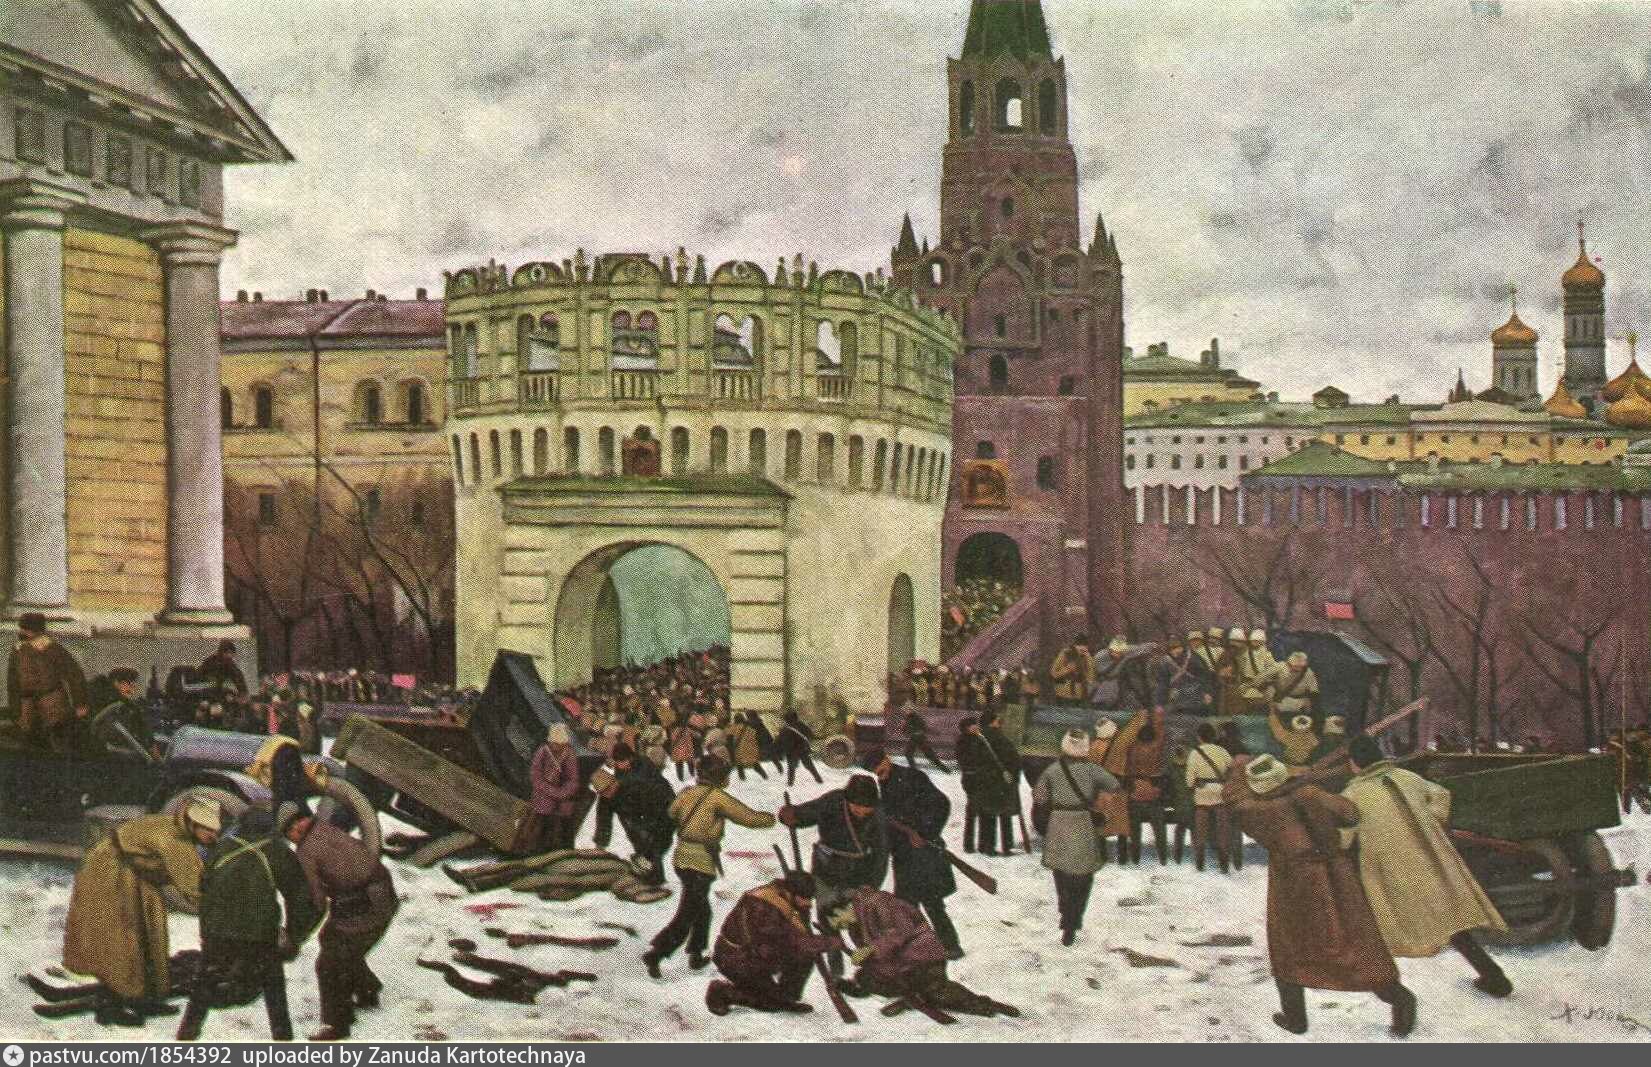 Юона парад на красной. Юон штурм Кремля в 1917 году. Юон художник Осада Московского Кремля в 1917 году. Юон Осада Московского Кремля.